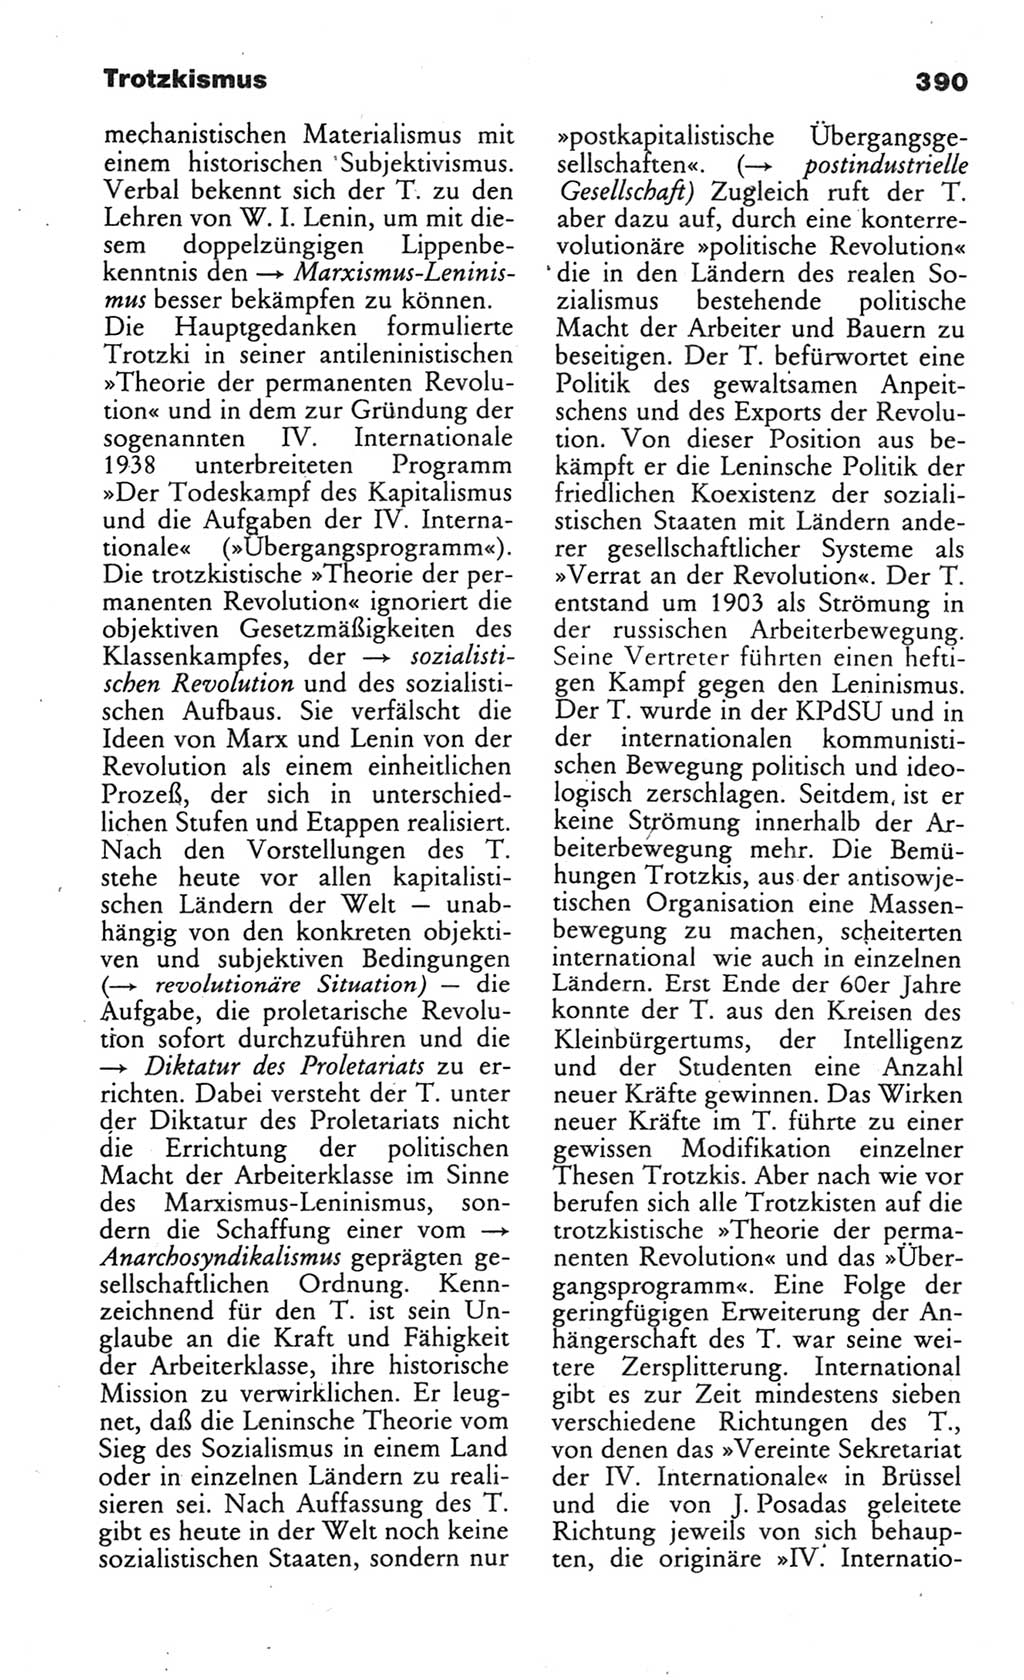 Wörterbuch des wissenschaftlichen Kommunismus [Deutsche Demokratische Republik (DDR)] 1984, Seite 390 (Wb. wiss. Komm. DDR 1984, S. 390)